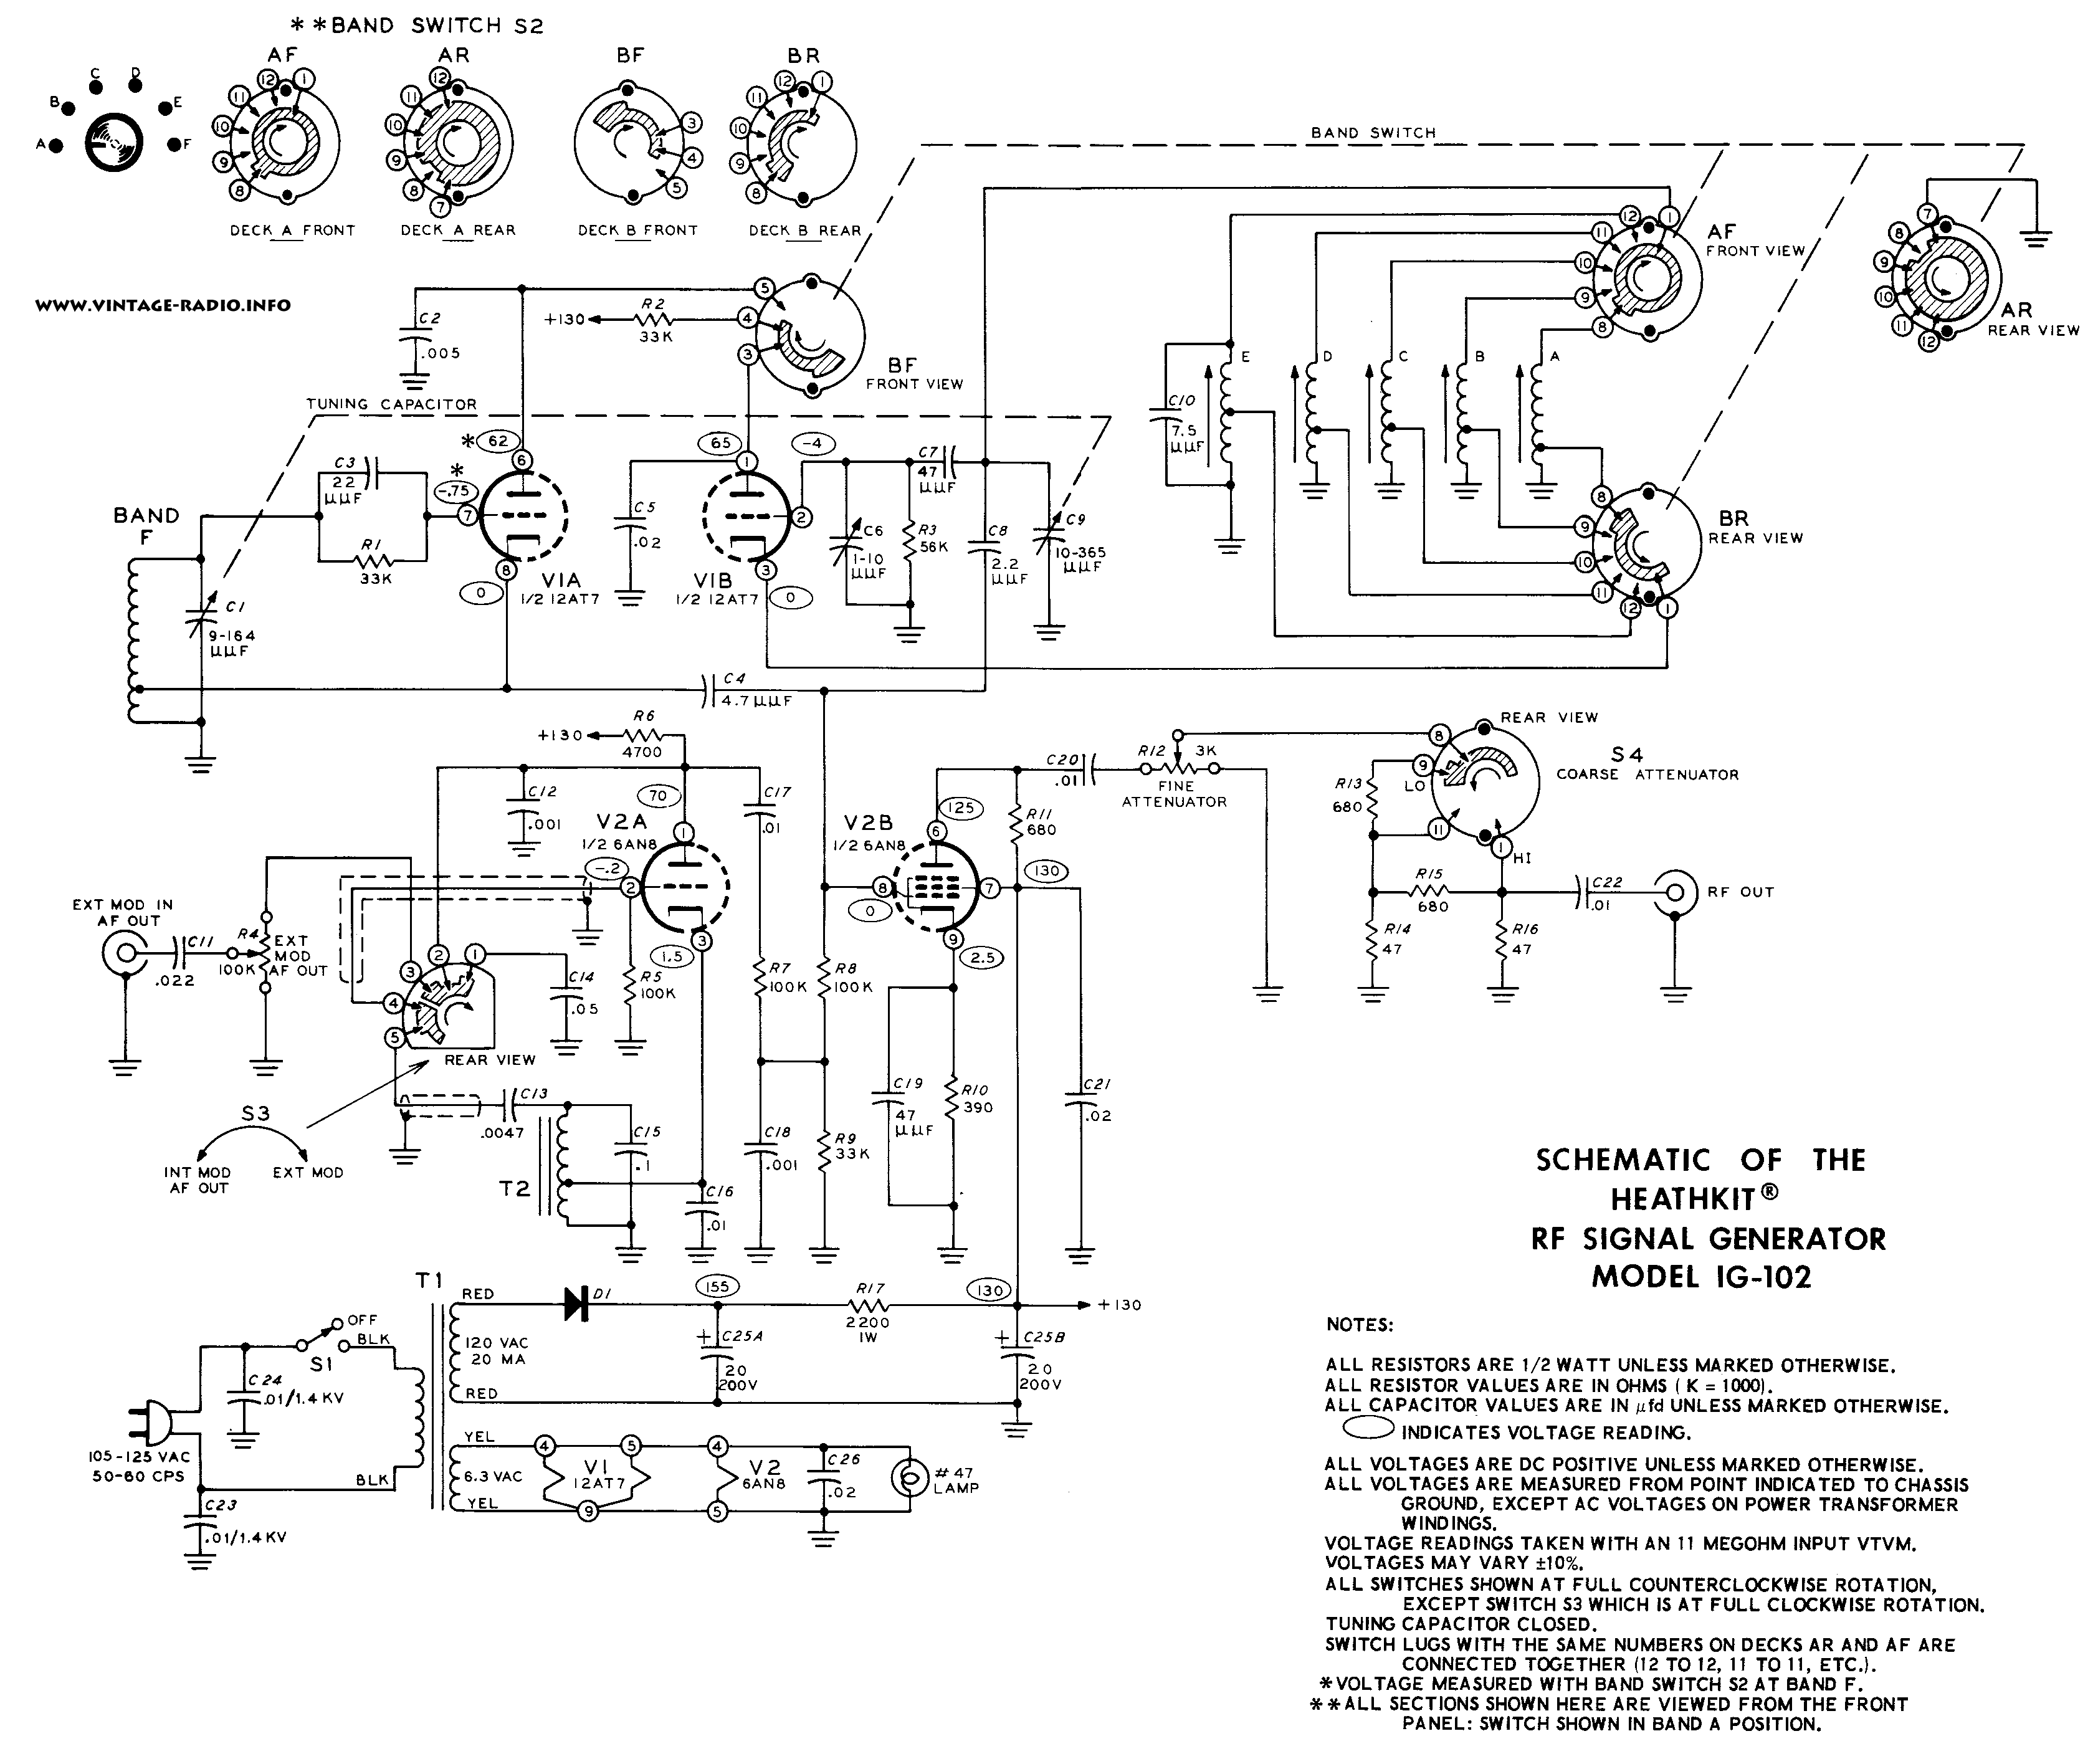 Heathkit IG-102 schematic from https://www.vintage-radio.info/